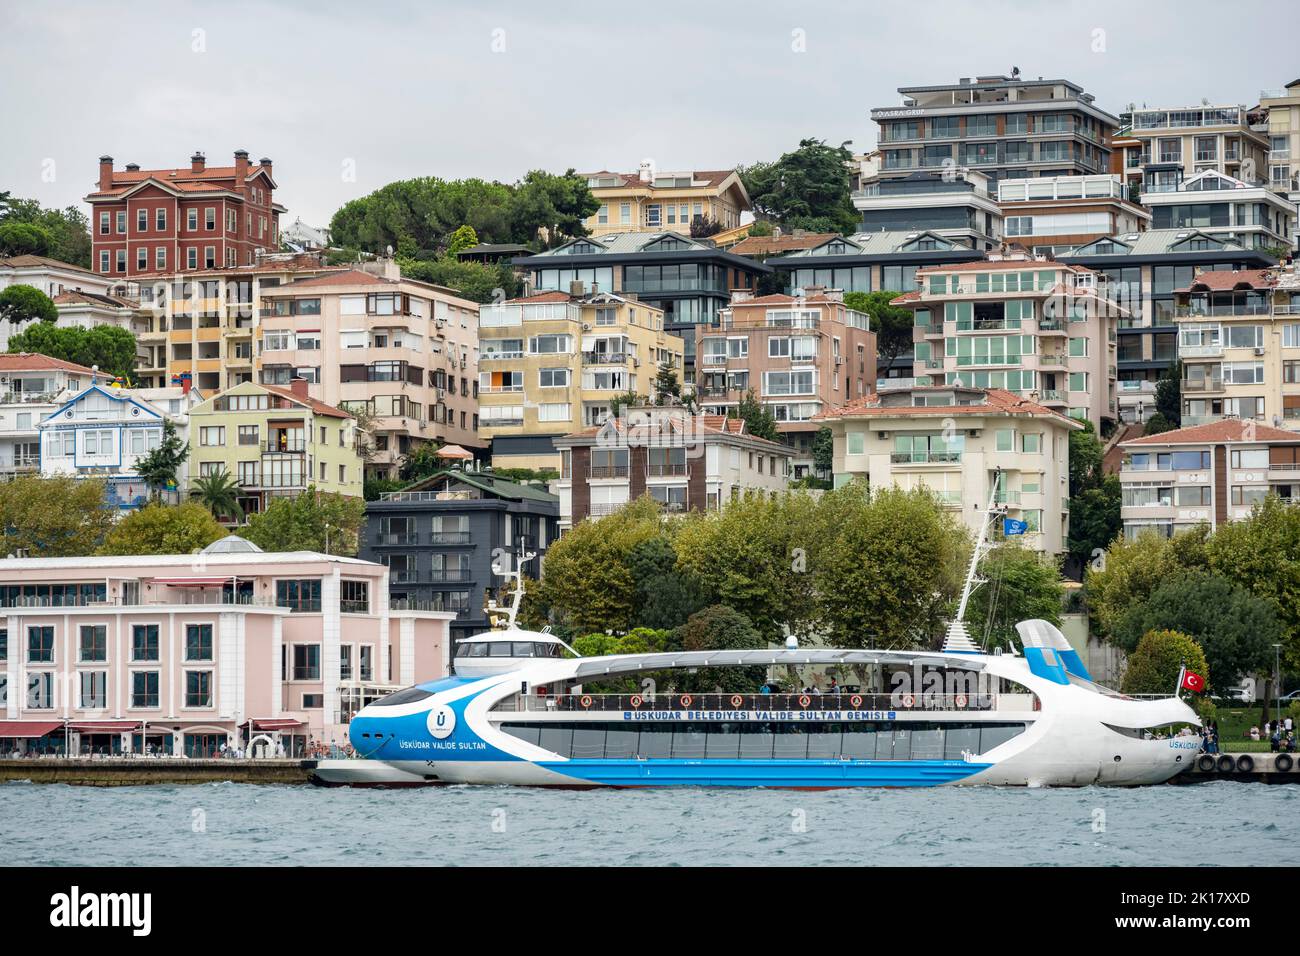 Türkei, Istanbul, Üsküdar, modernes Fährschiff Stockfoto